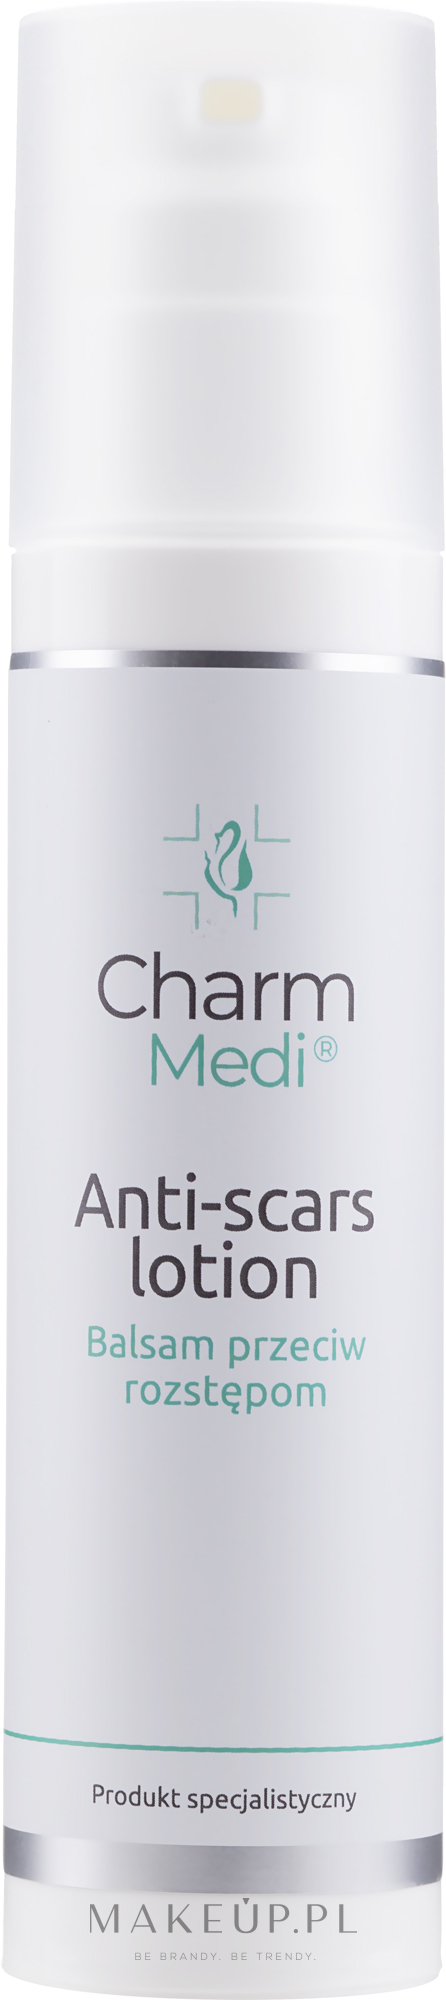 PRZECENA! Balsam do ciała przeciw rozstępom - Charmine Rose Charm Medi Anti-Scars Lotion * — Zdjęcie 200 ml